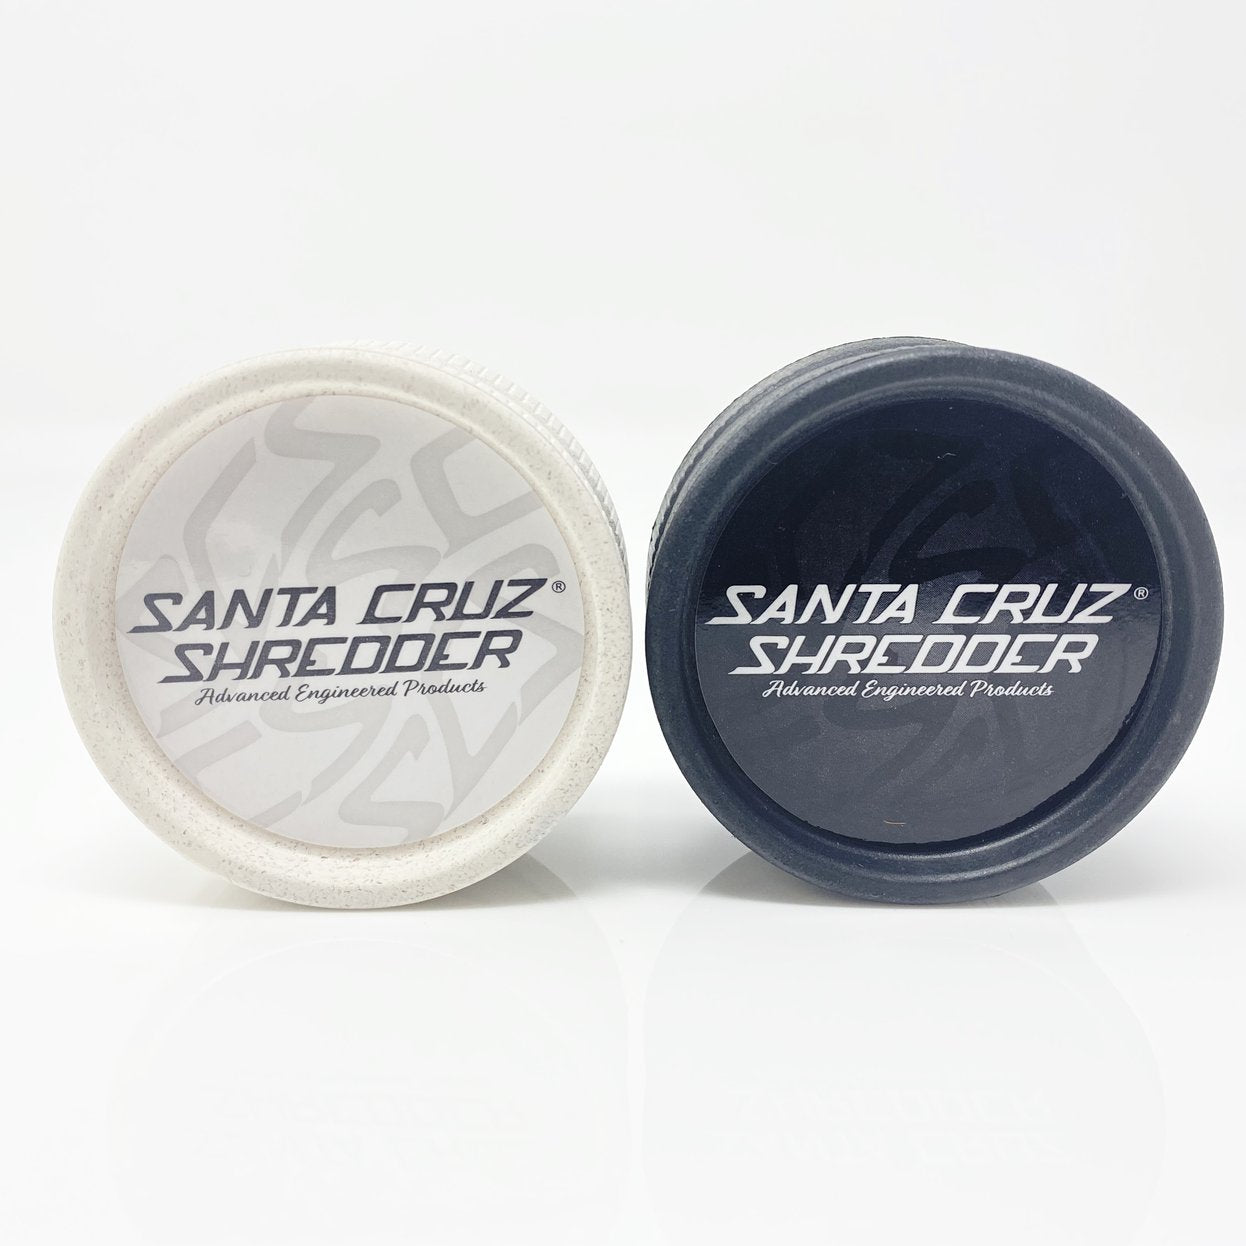 Santa Cruz Shredder 2 Piece Hemp Grinder 2 Pack (White/Black) show variants